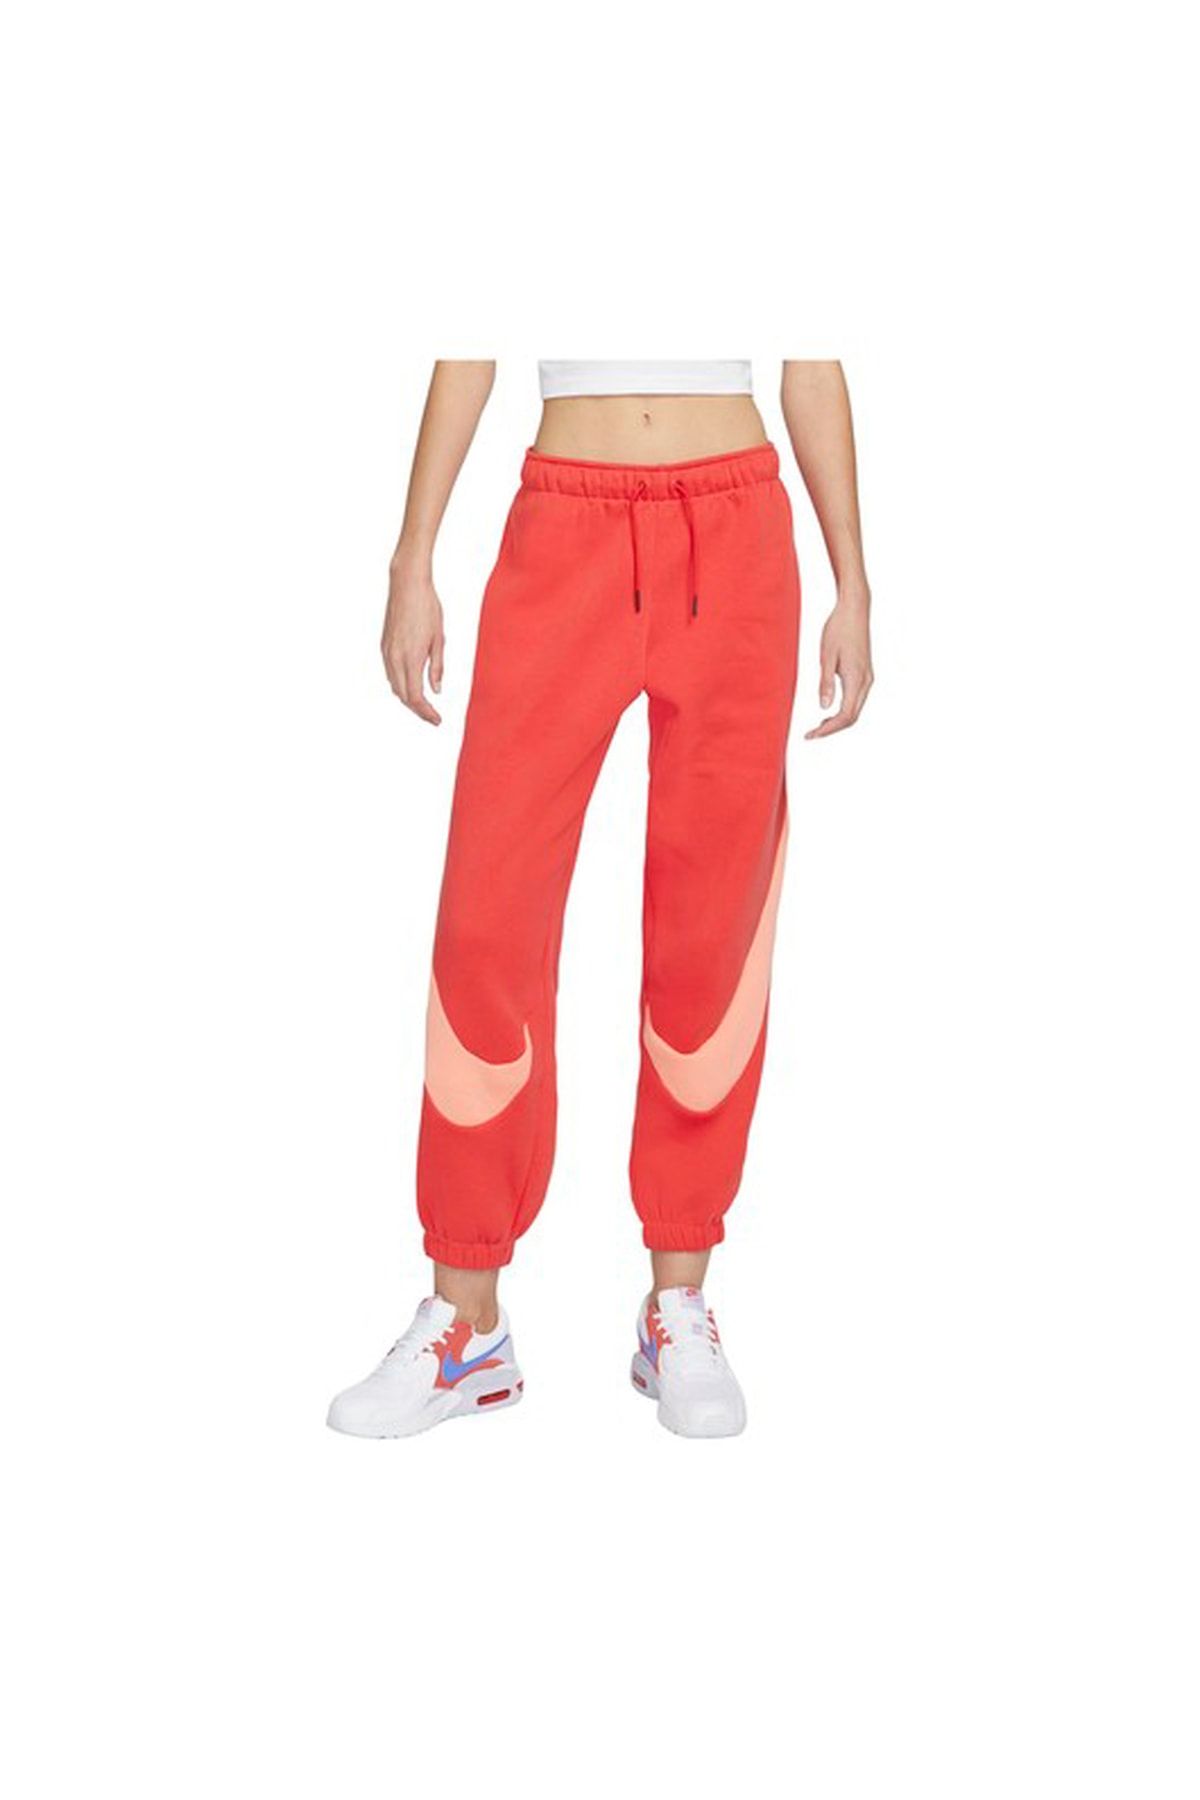 Nike Sportswear Swoosh Easy Fleece Kadın Eşofman Altı-dd5582-605 (bir Beden Küçük Almalısınız)